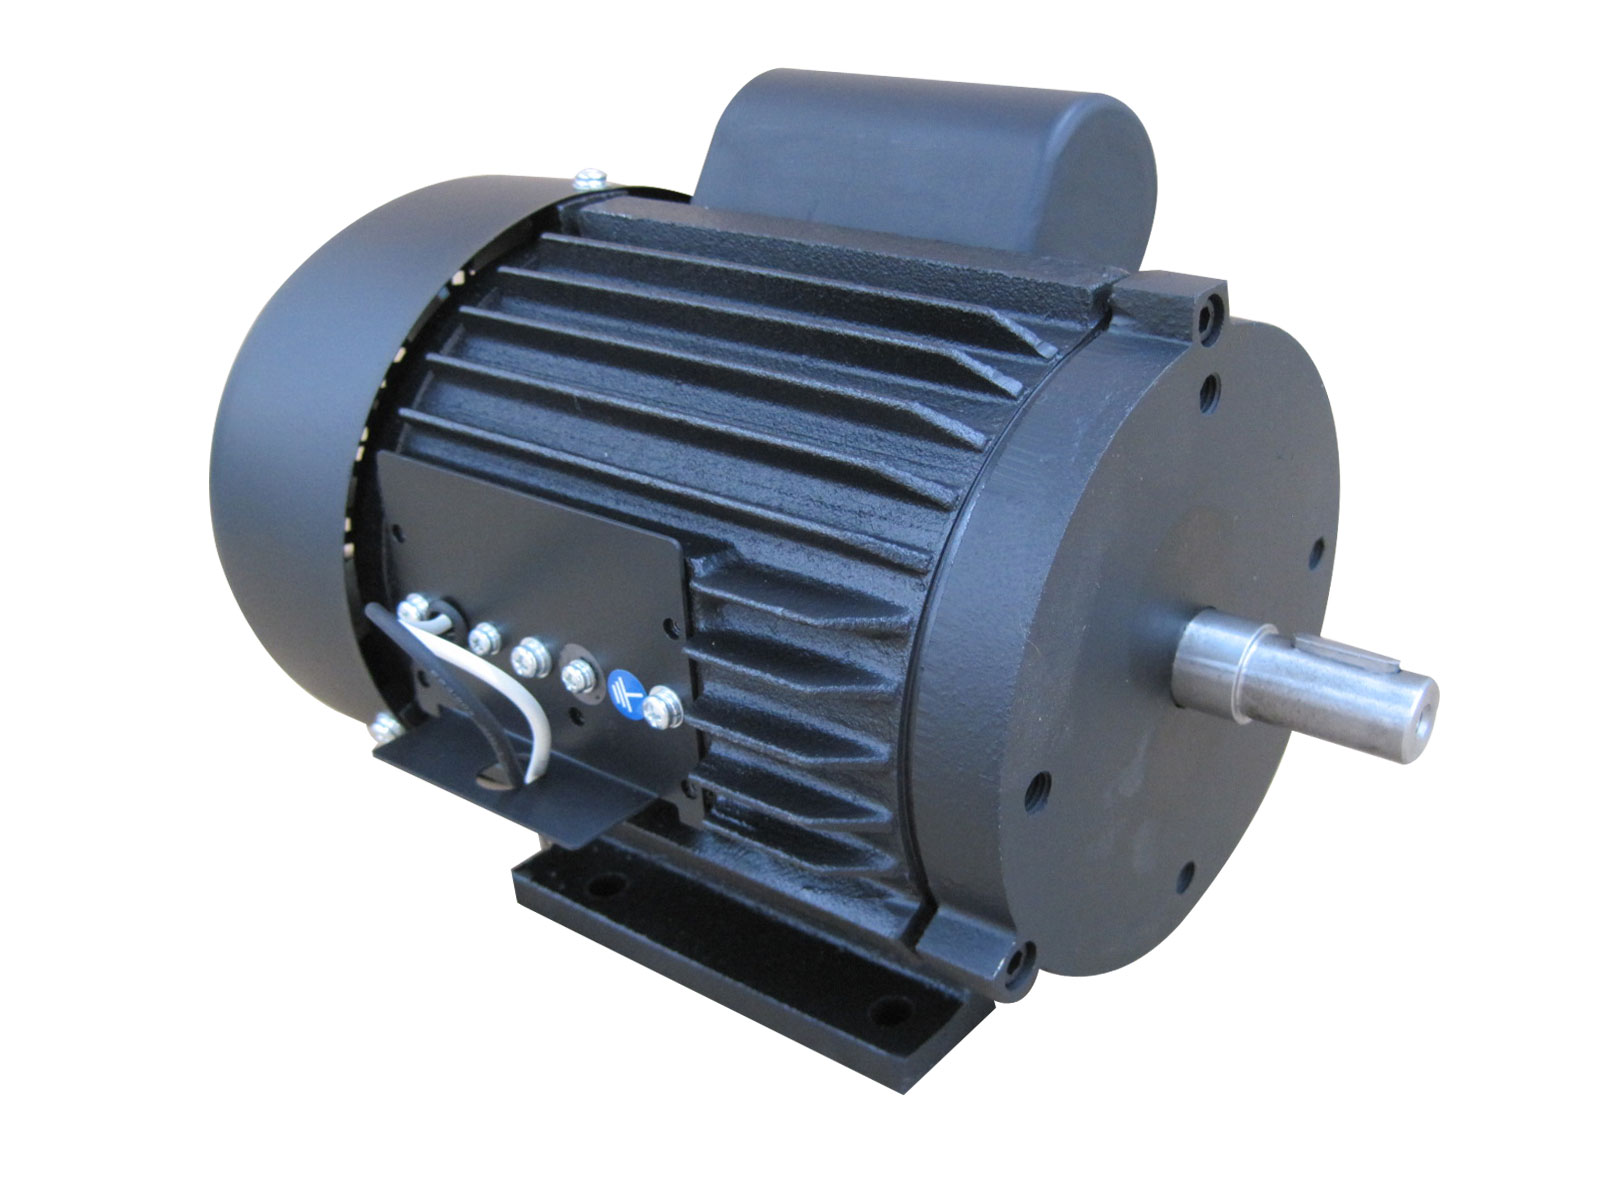 7.5 KW Industrial Ventilation Fan Motor